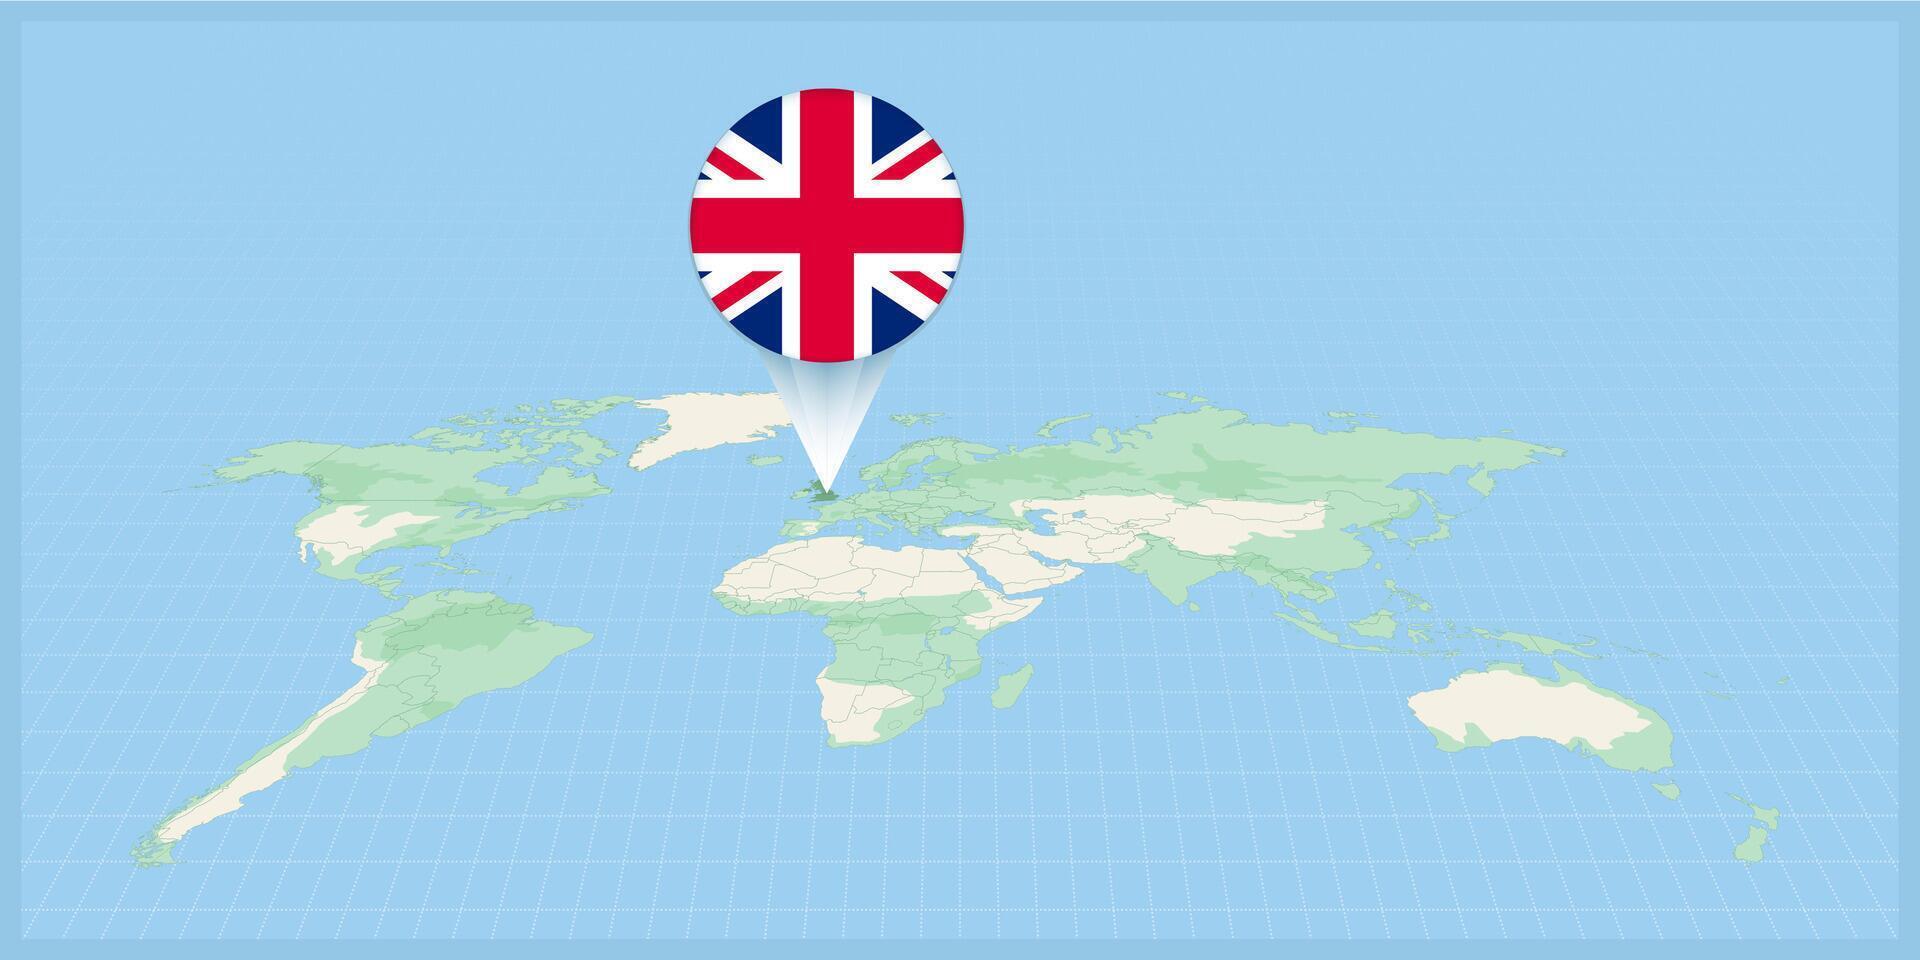 Ort von vereinigt Königreich auf das Welt Karte, markiert mit vereinigt Königreich Flagge Stift. vektor